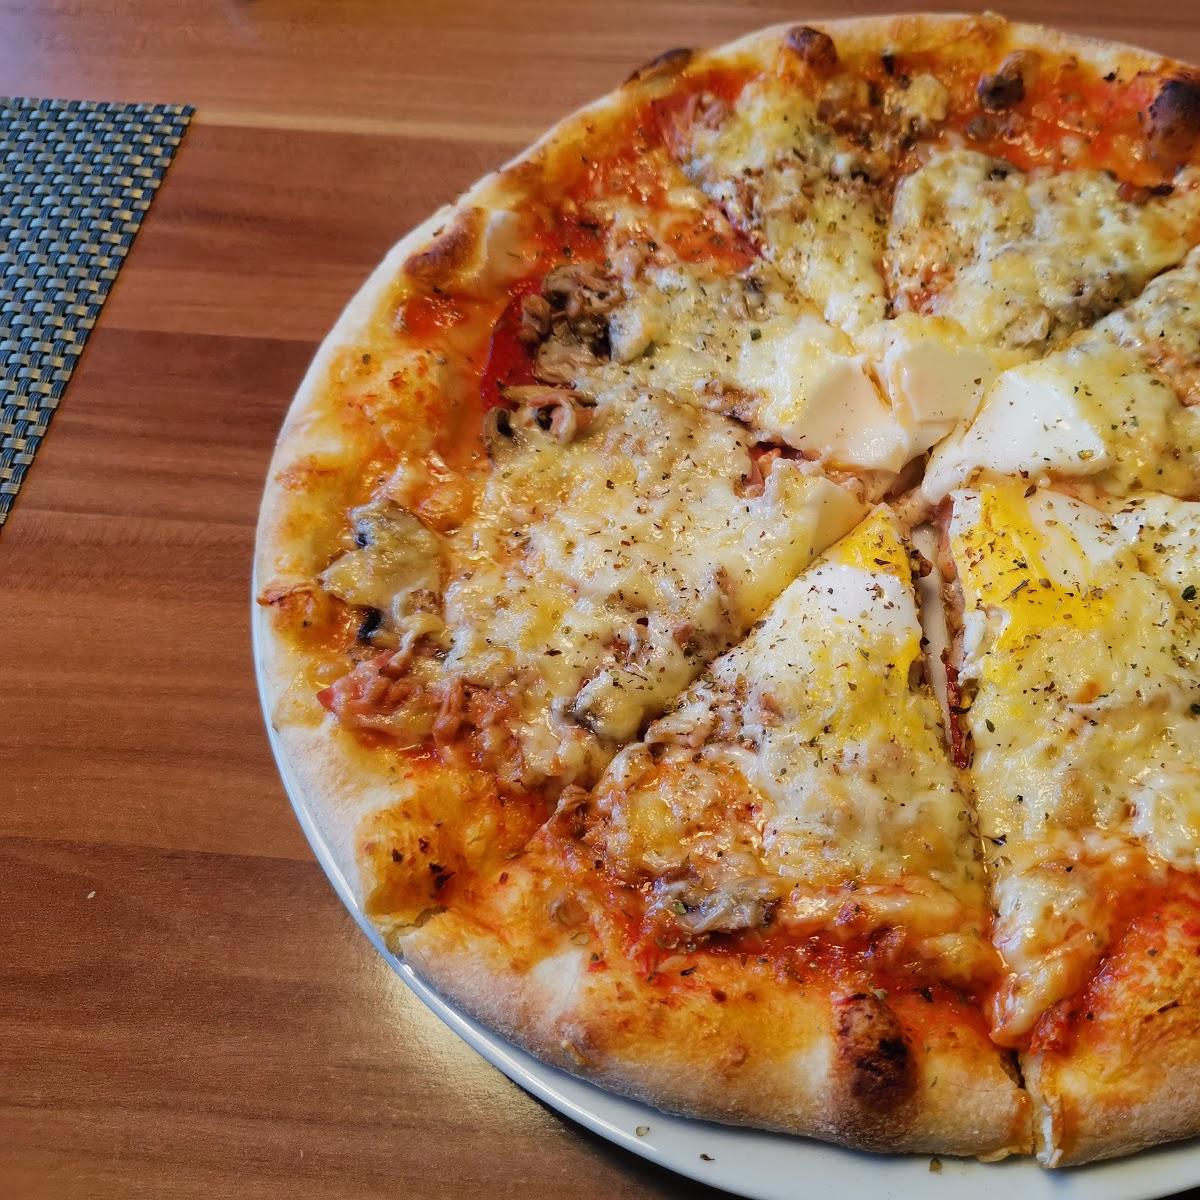 Restaurant "LECKER PIZZA" in Dortmund